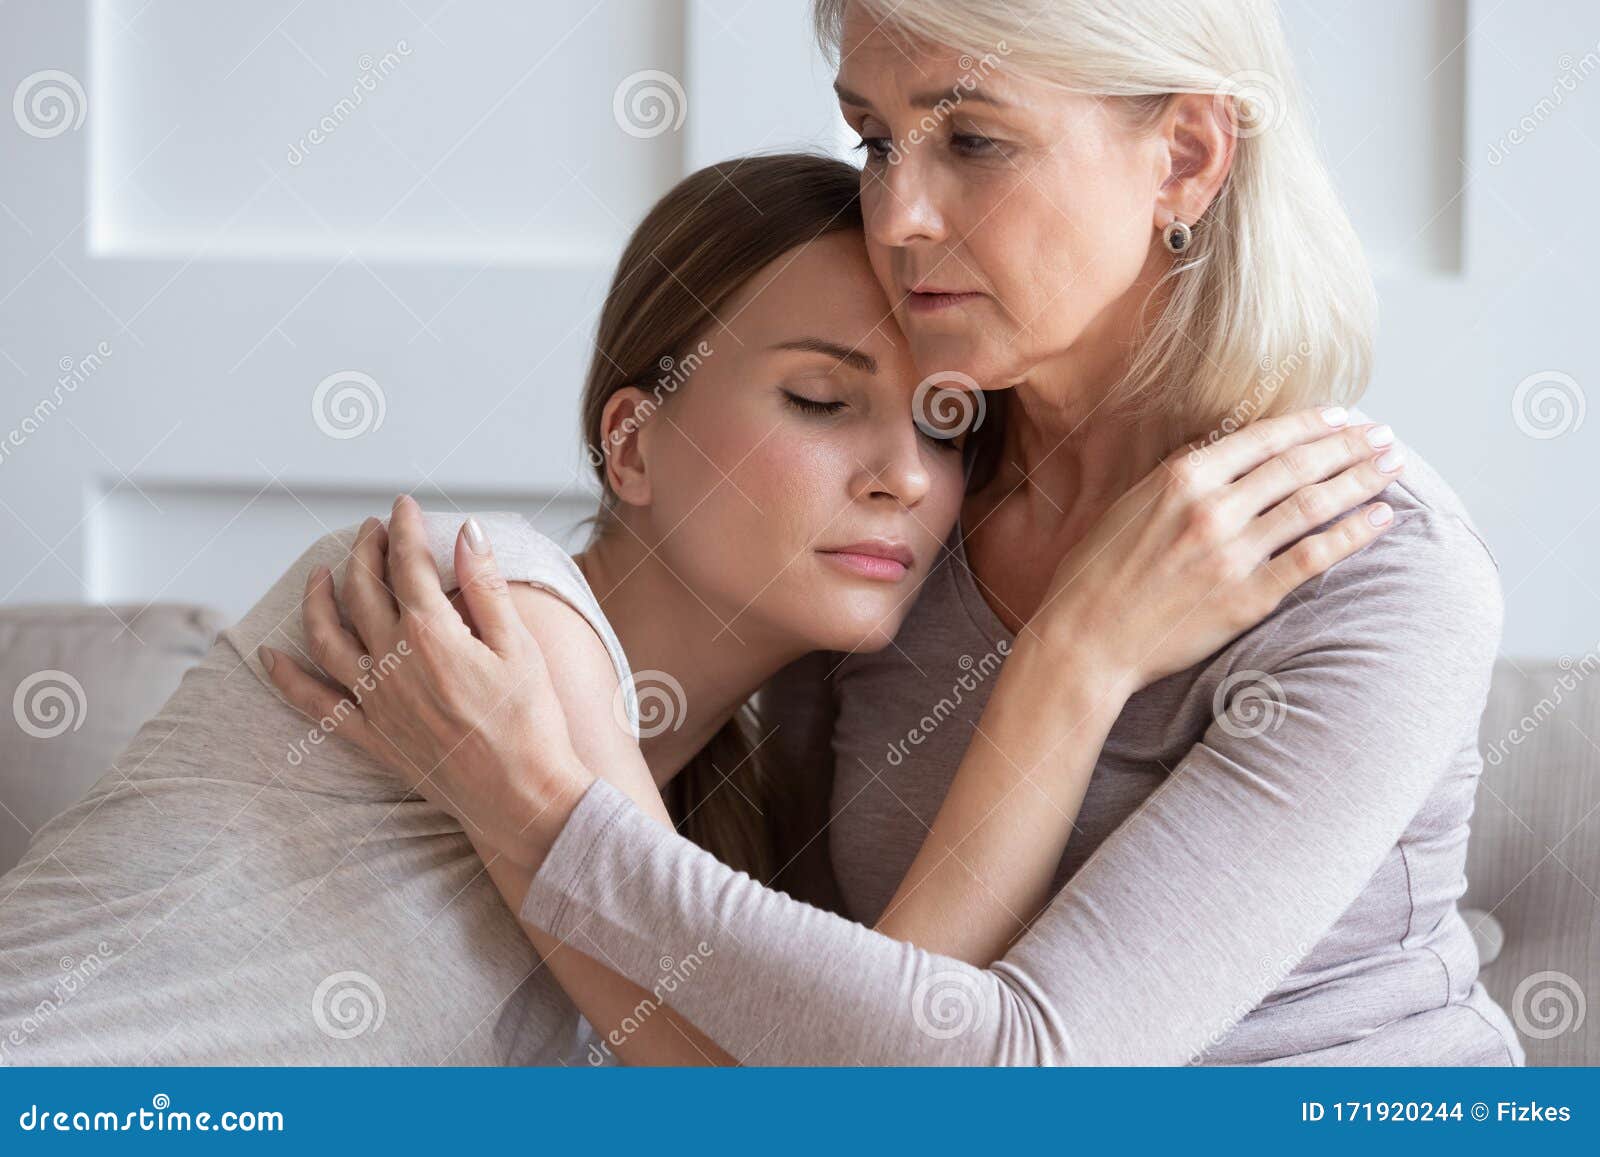 loving senior mother hug adult daughter showing support